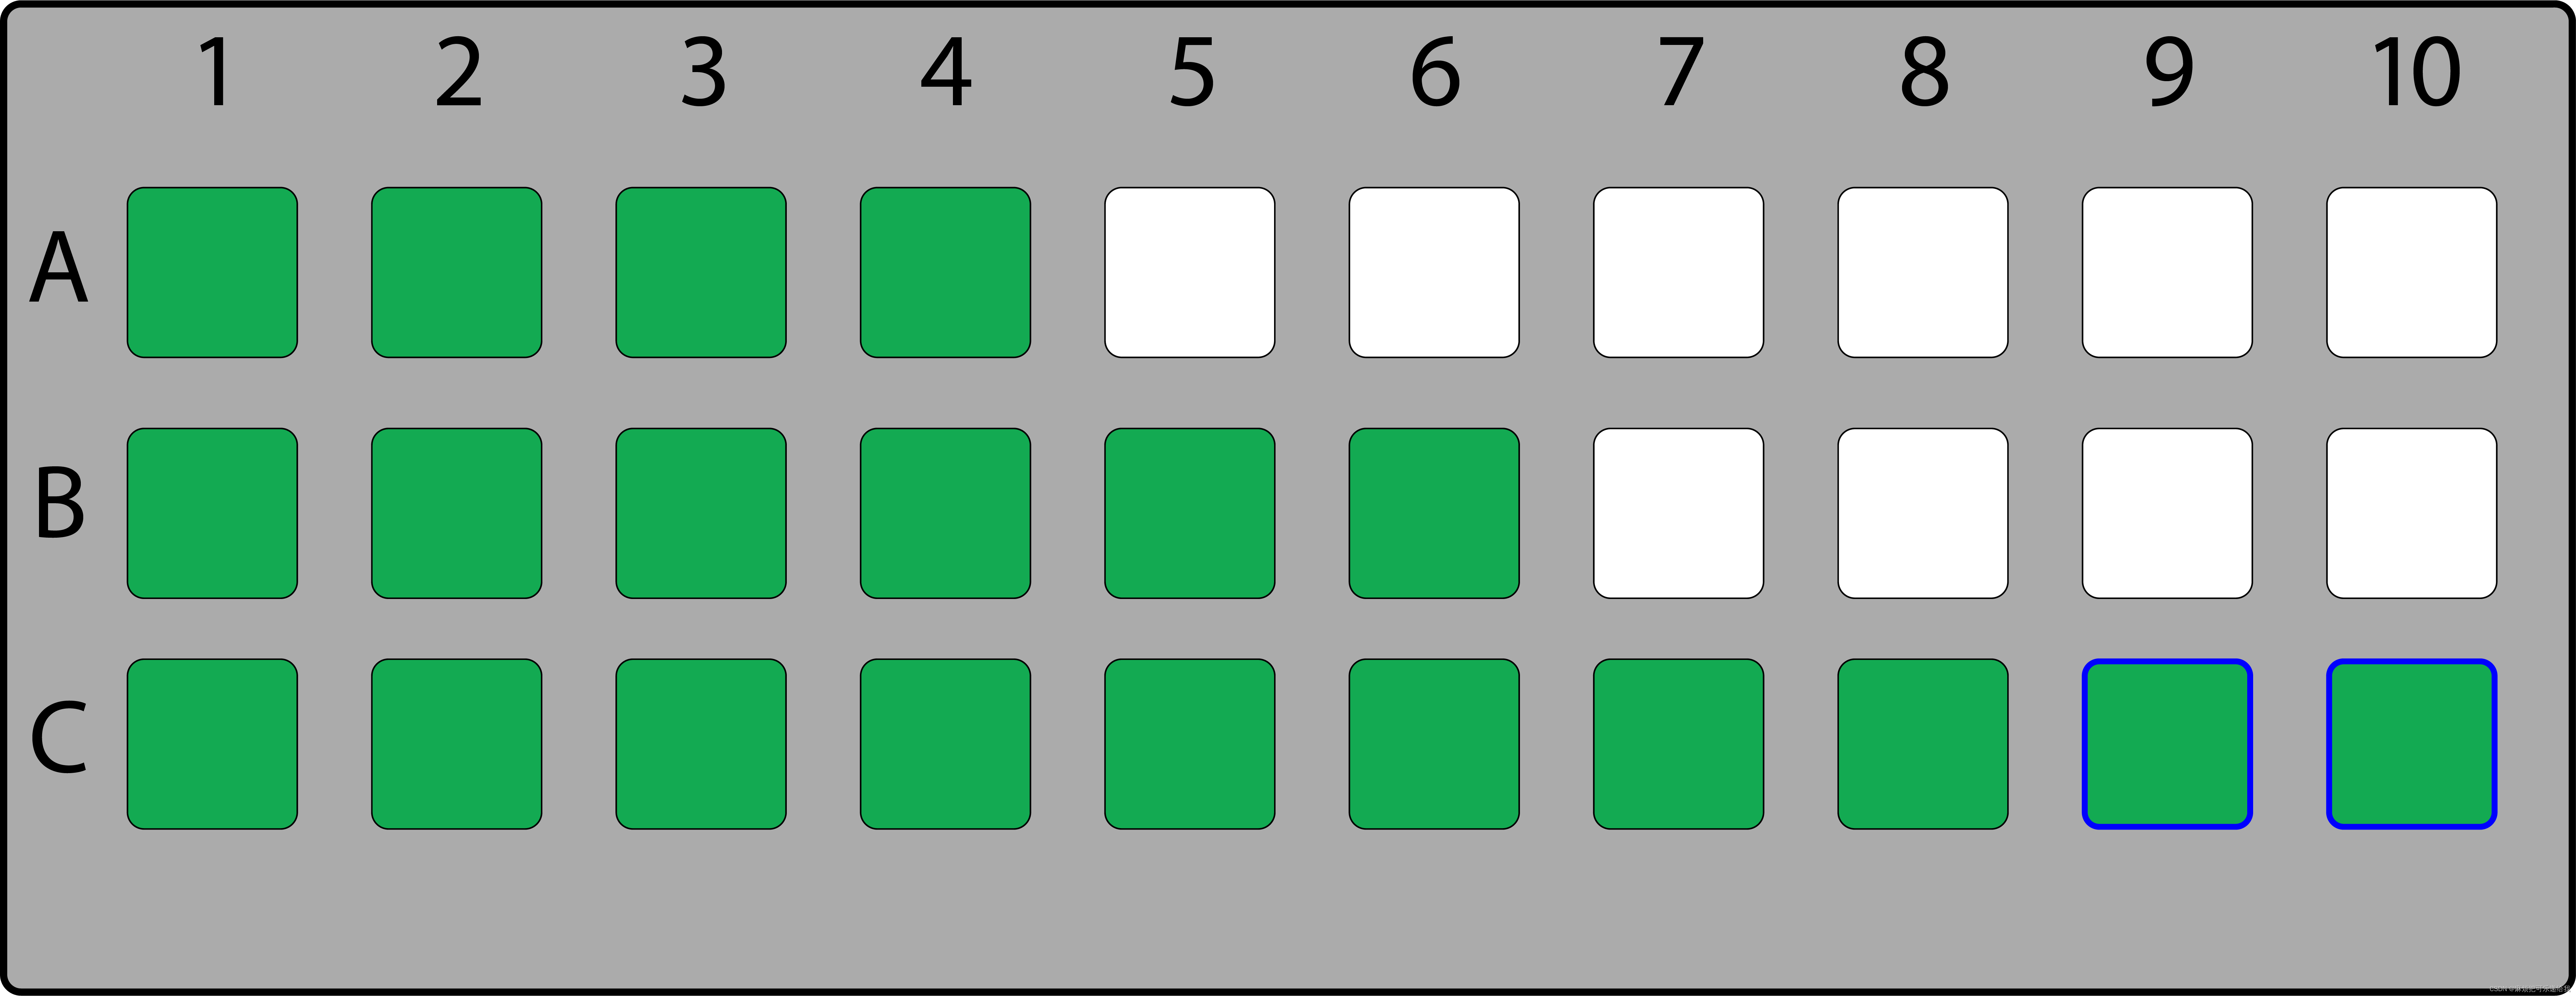 场地的二维表示，绿色为有效的座位。无障碍座位用蓝色轮廓标出。